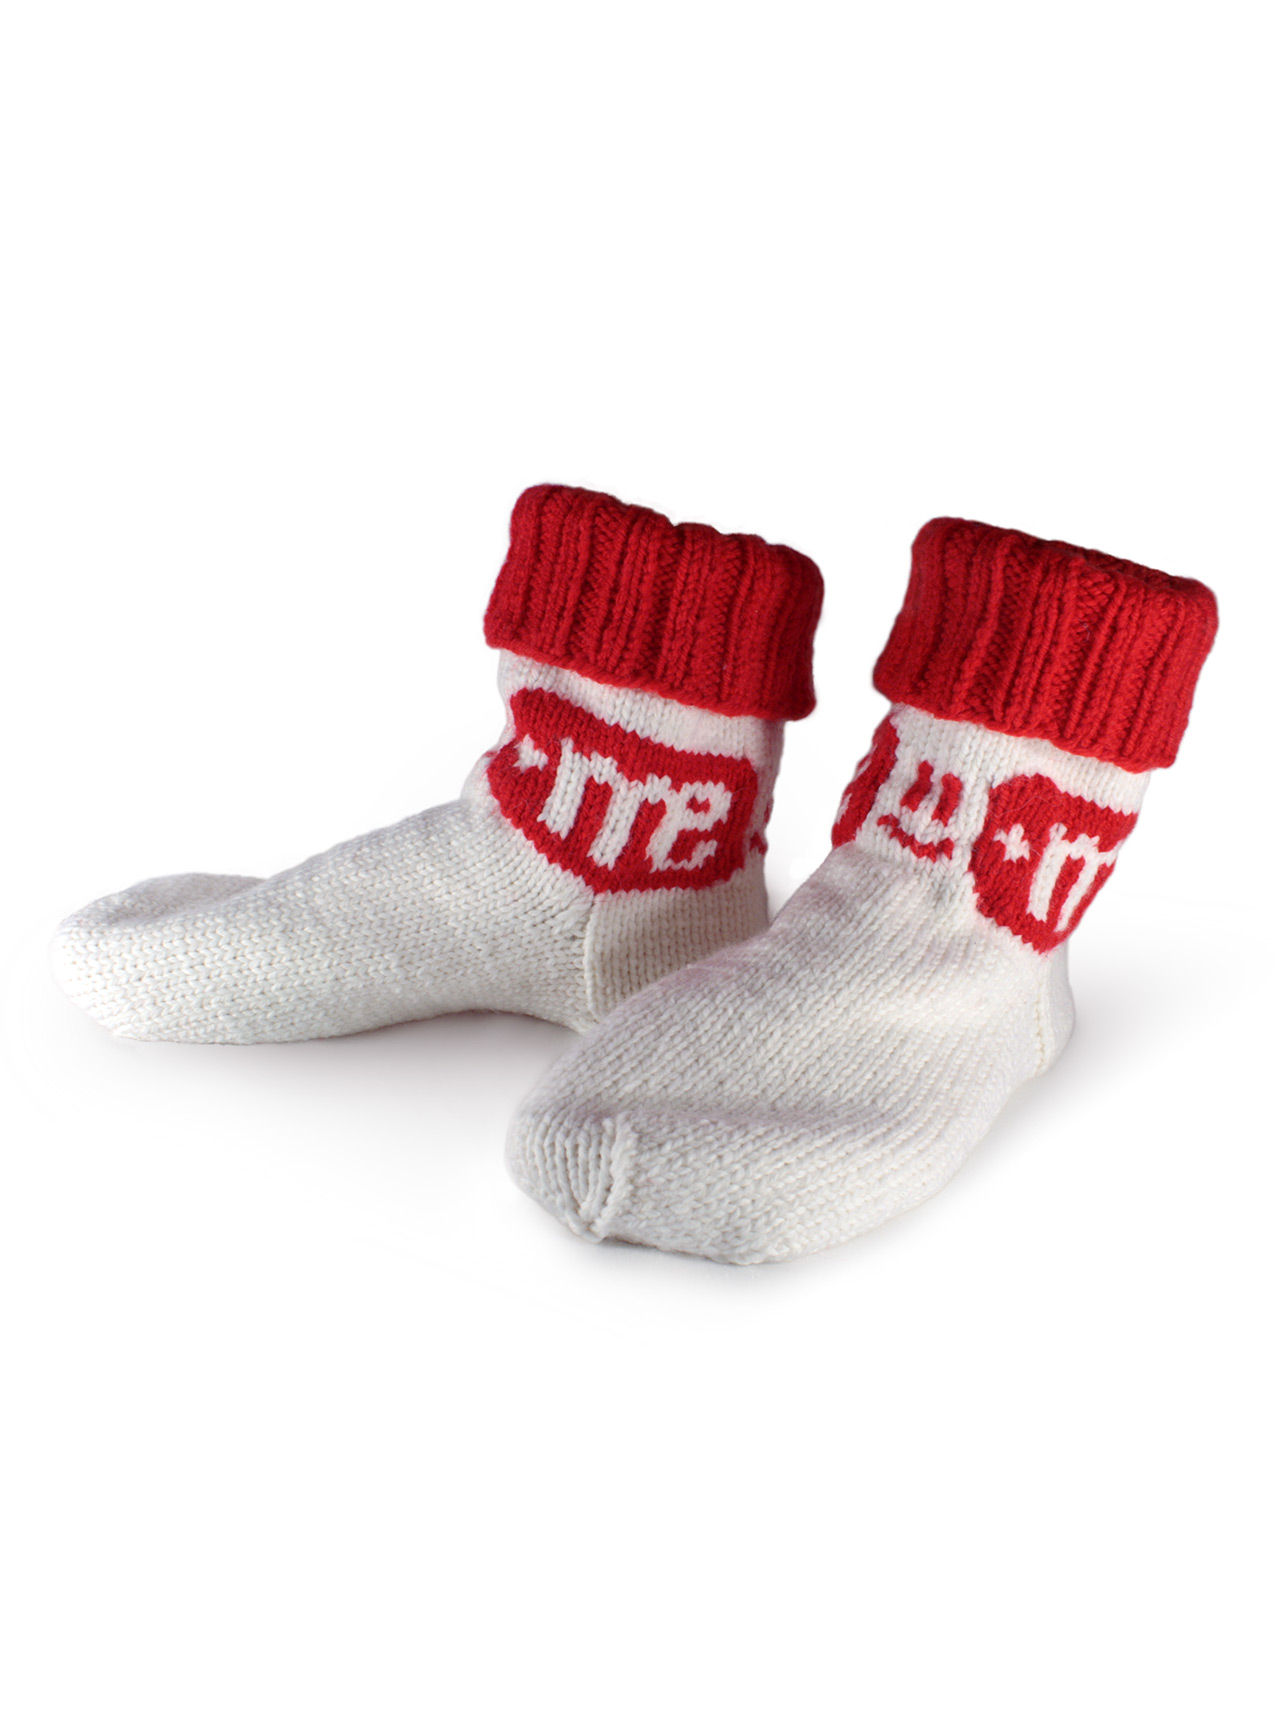 Бело-красные вязаные мужские носки с логотипом компании. Ручная работа. Арт:2855.